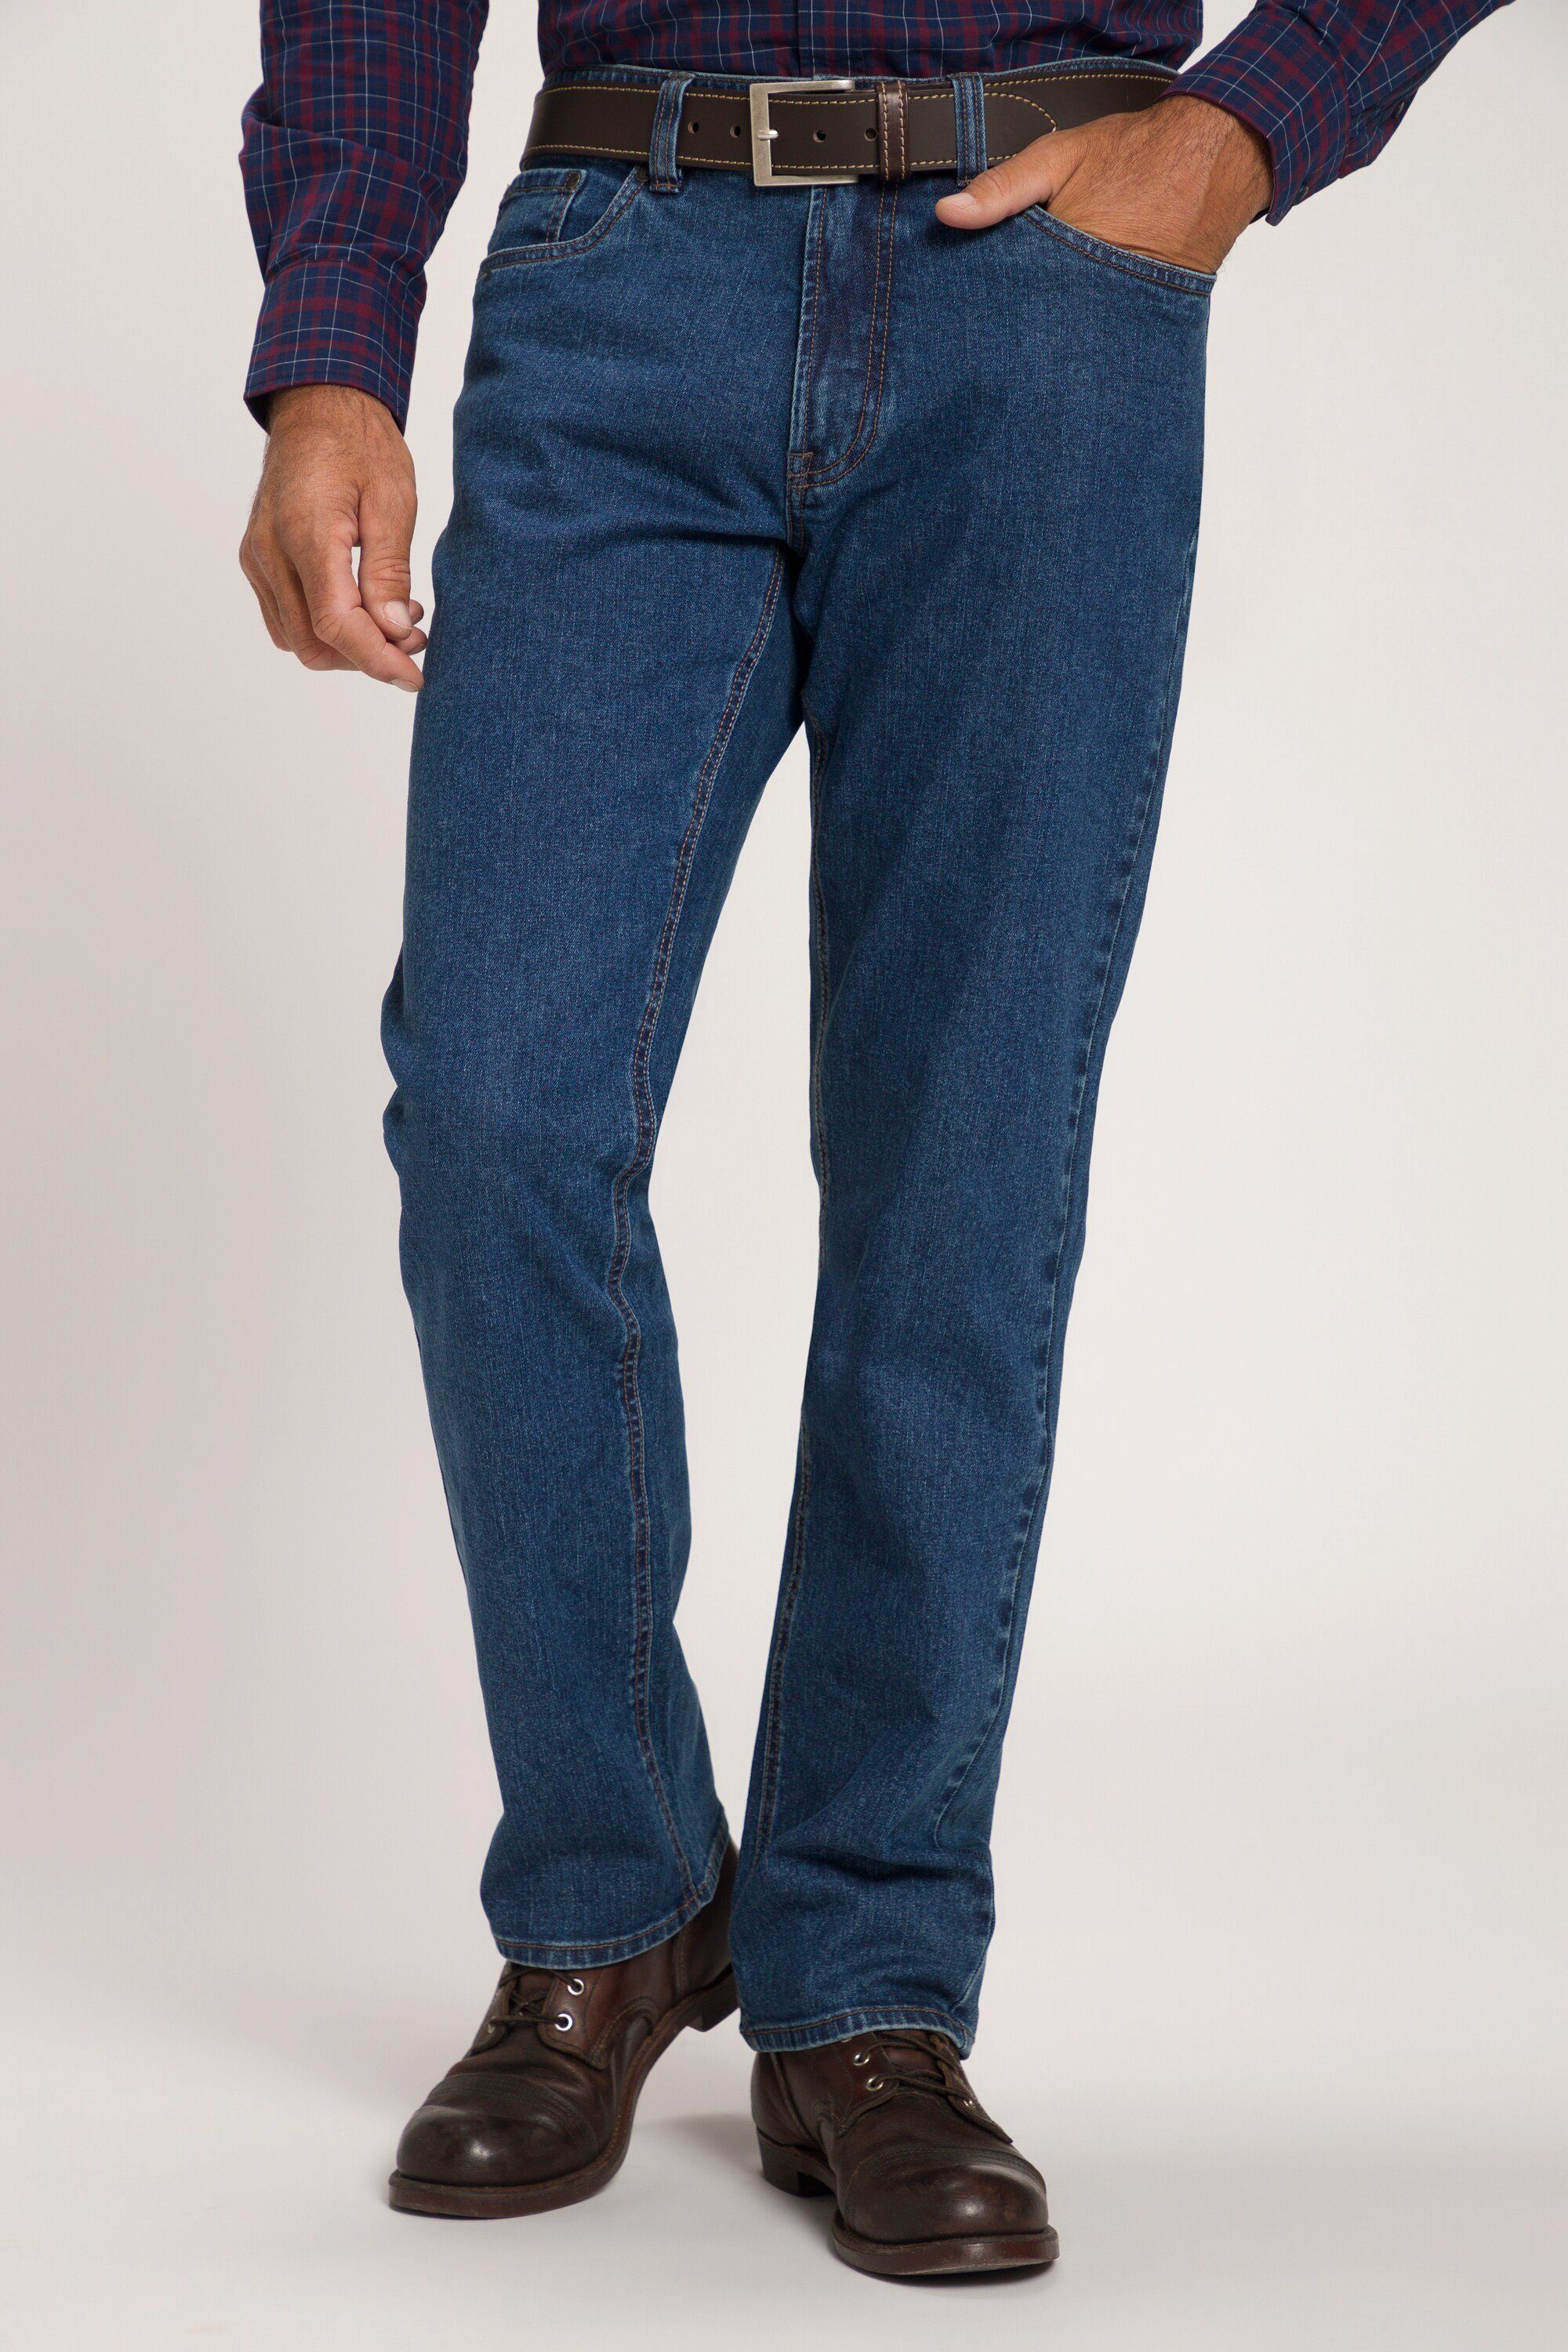 JP1880 Cargohose Jeans 5-Pocket Regular Fit bis Gr. 70/35